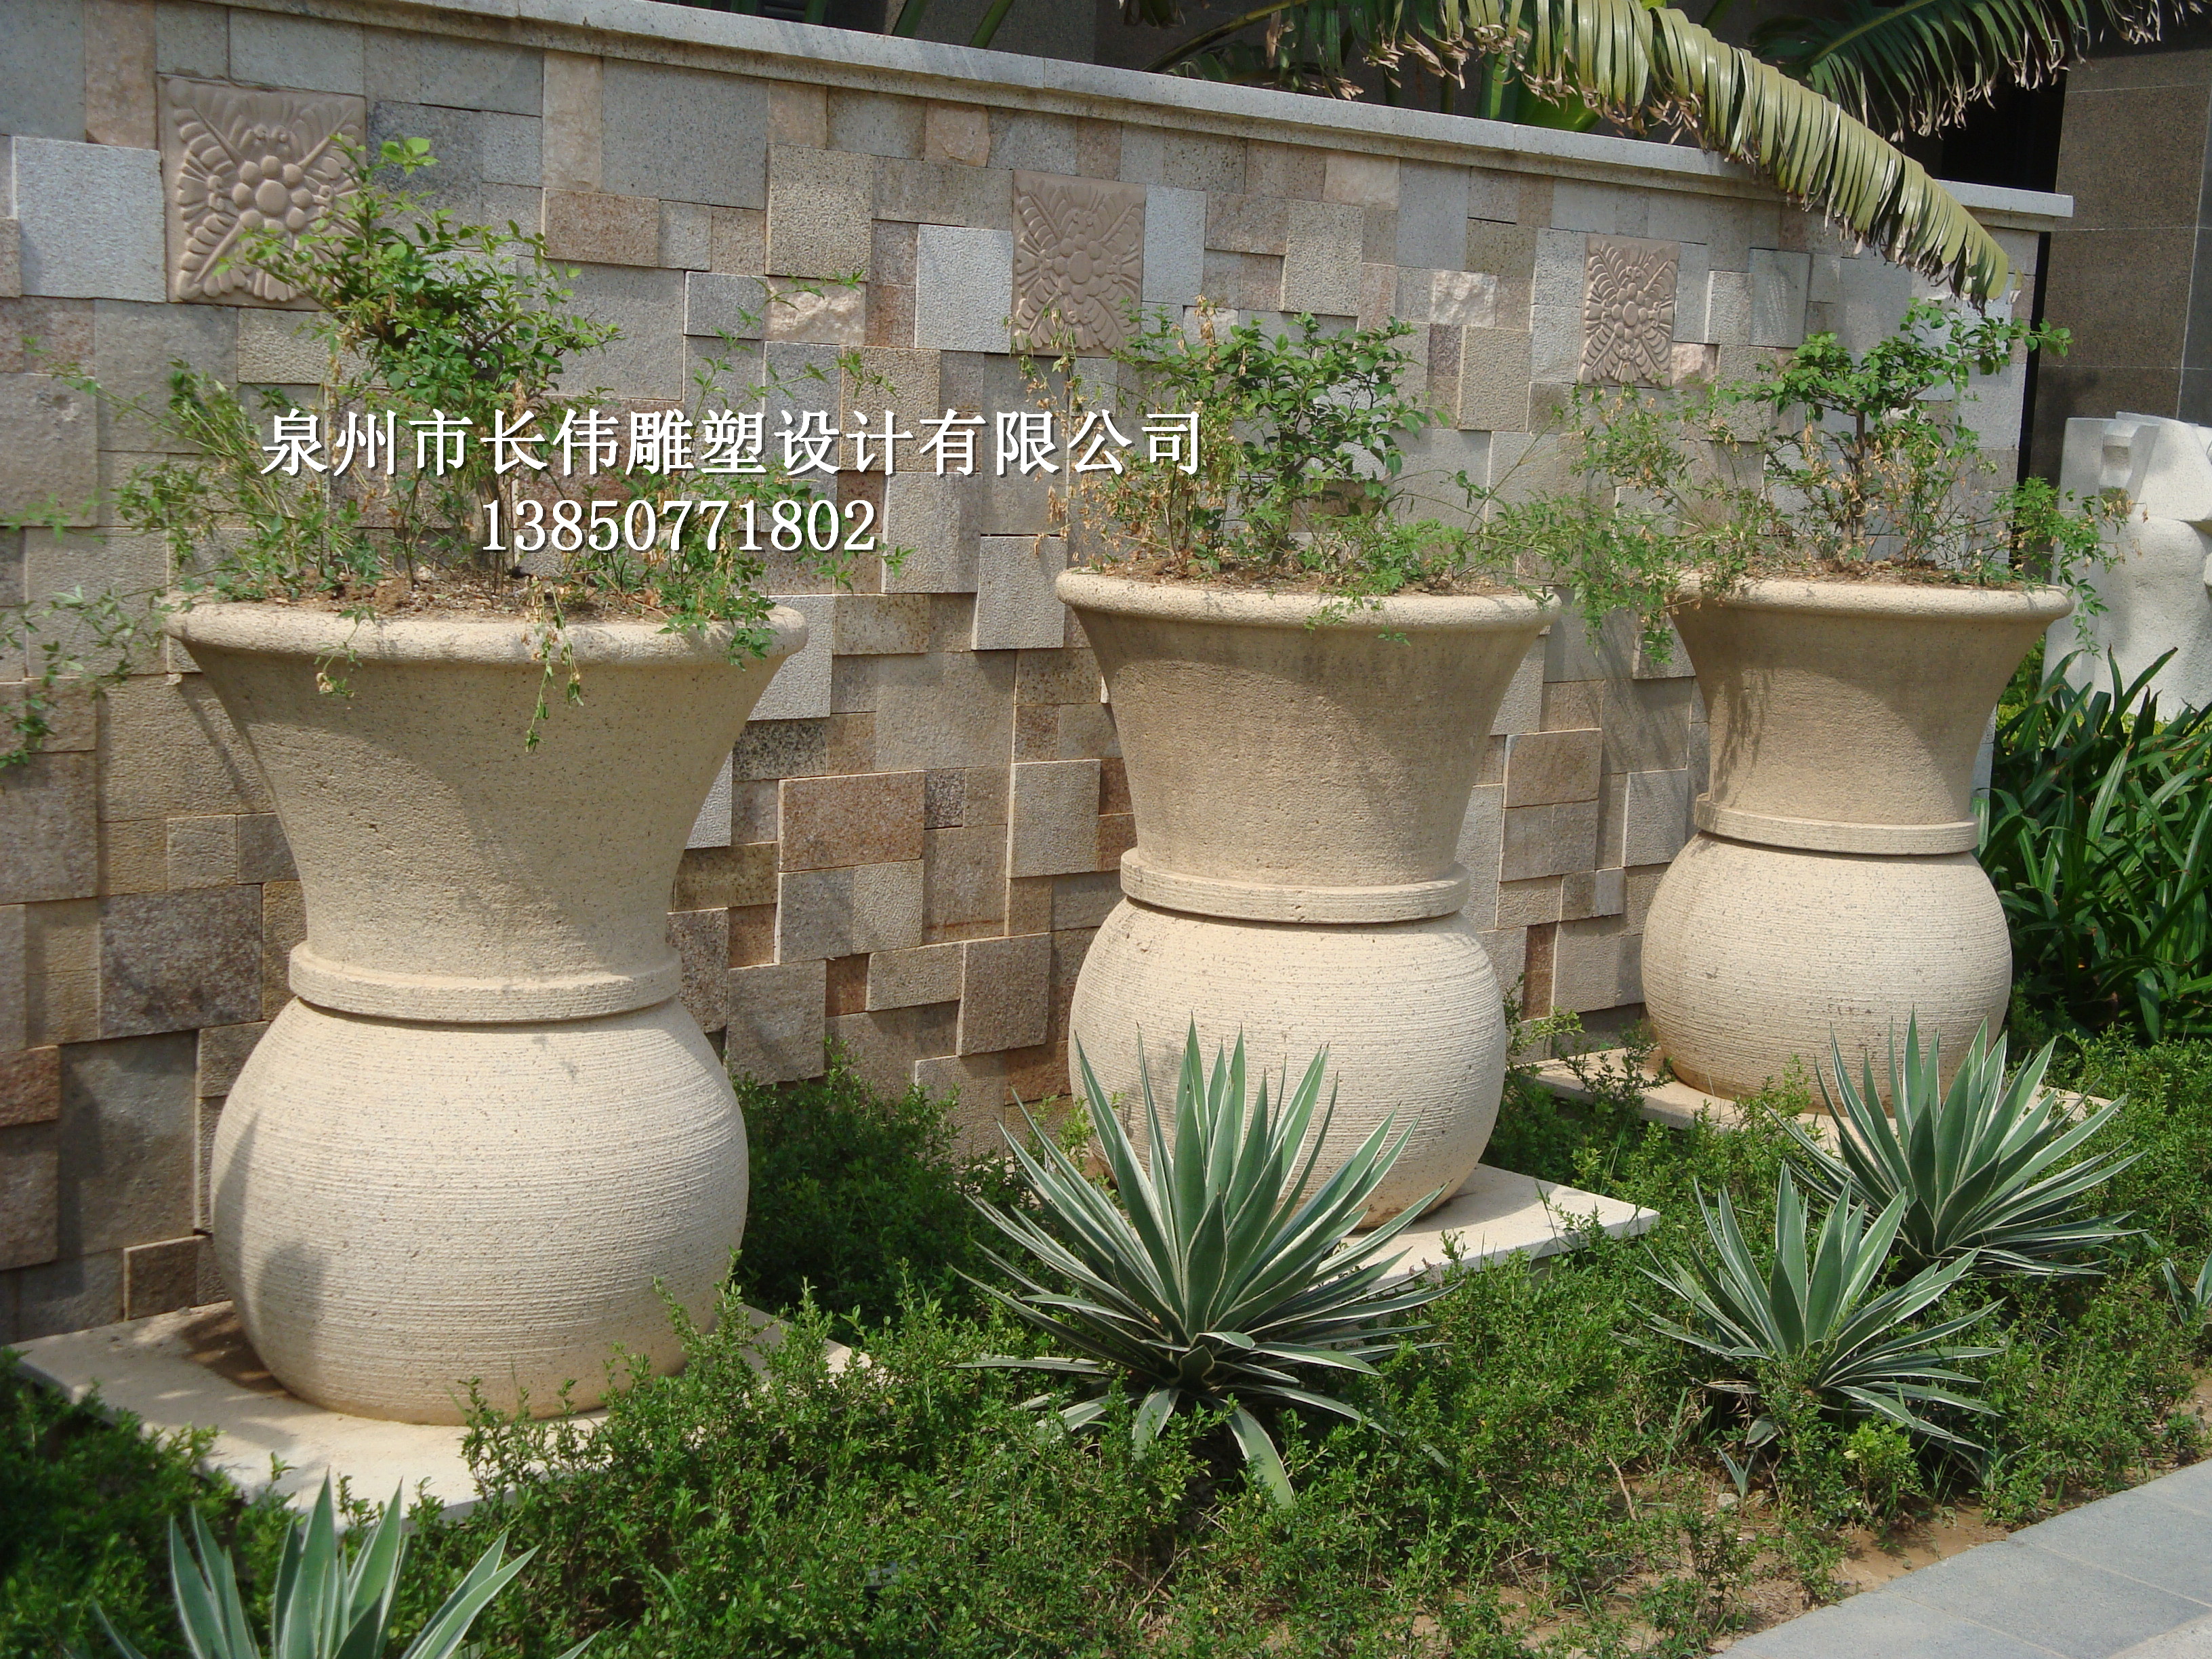 供应用于花钵厂家的石雕花钵埃及米黄花盆厂家批发黄锈石雕塑花盆花瓶图片